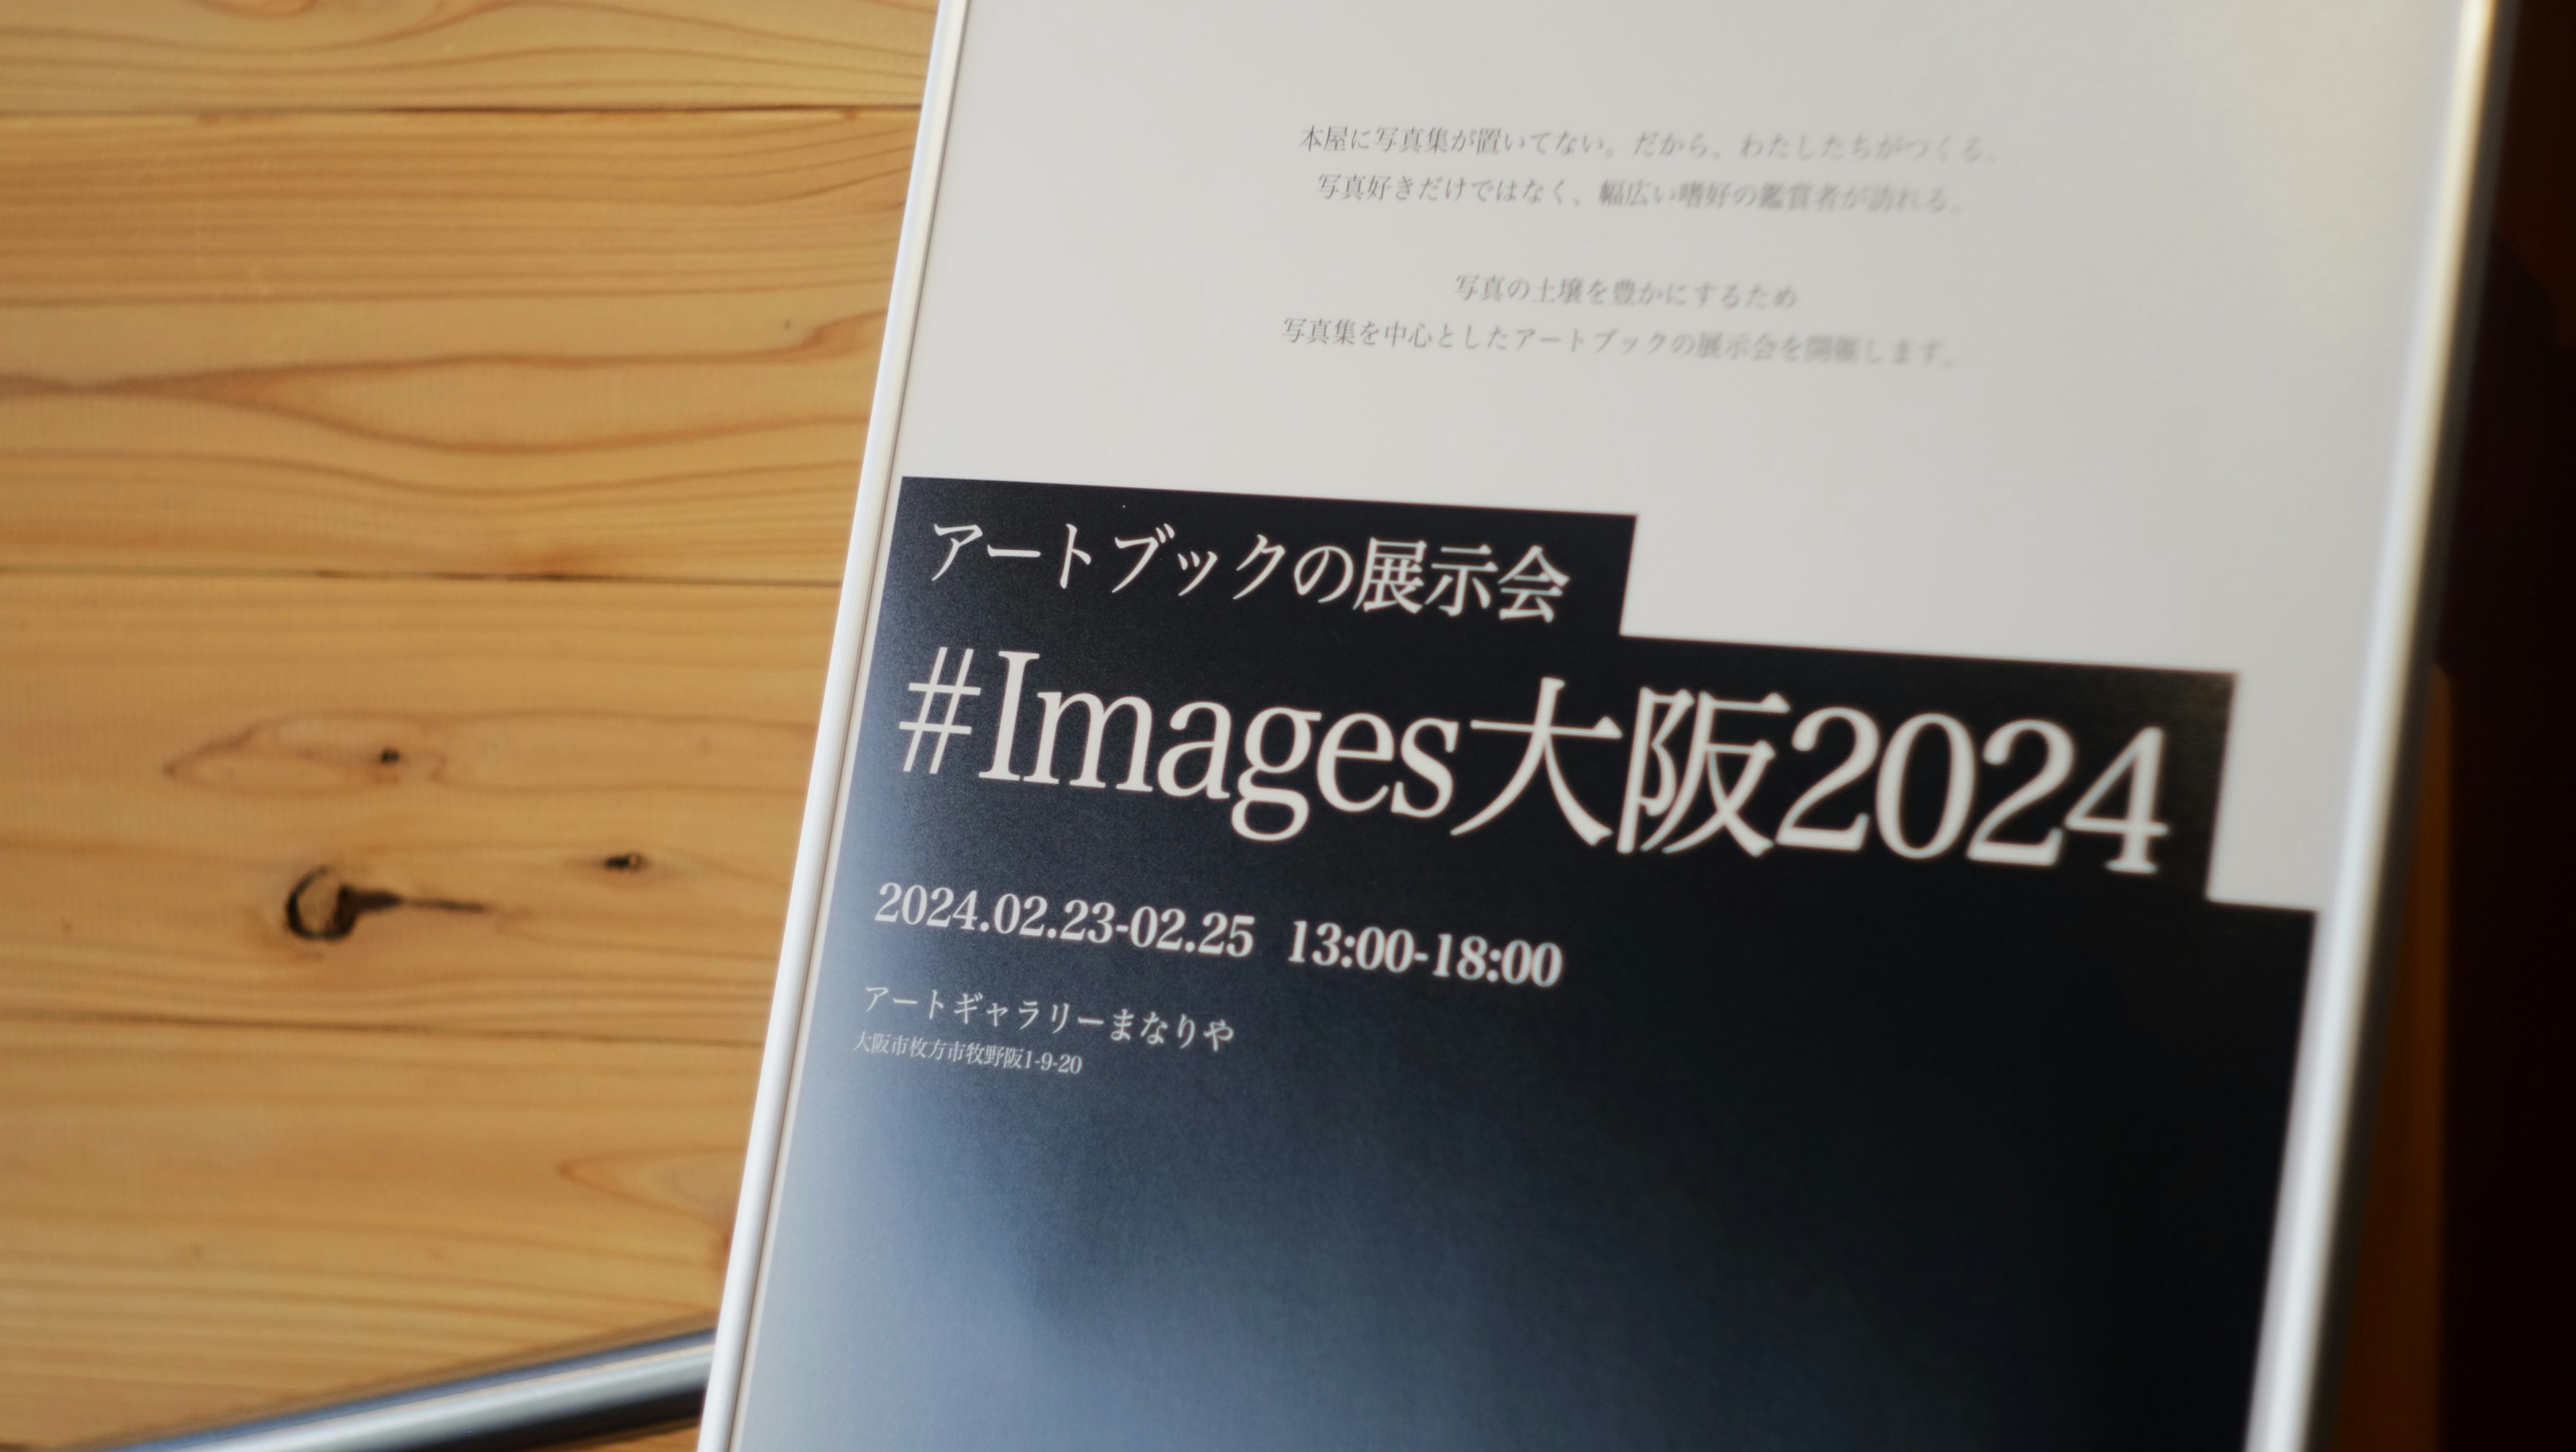 2024-03-images-osaka-2024-cover-image